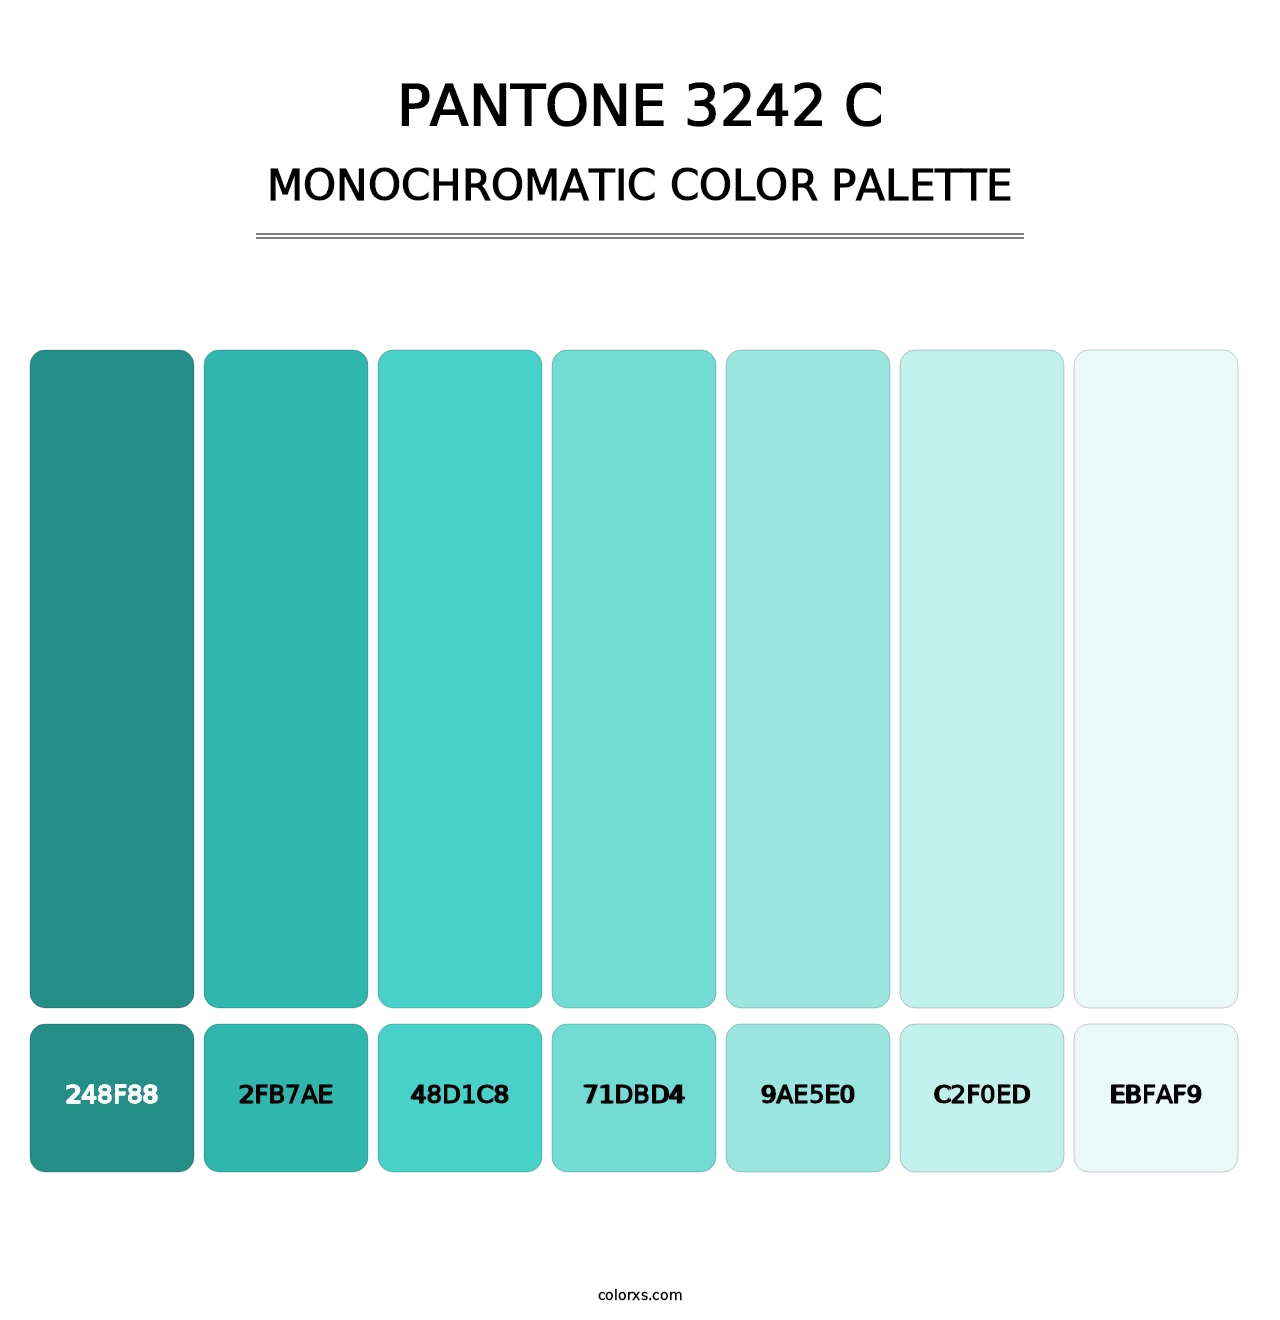 PANTONE 3242 C - Monochromatic Color Palette